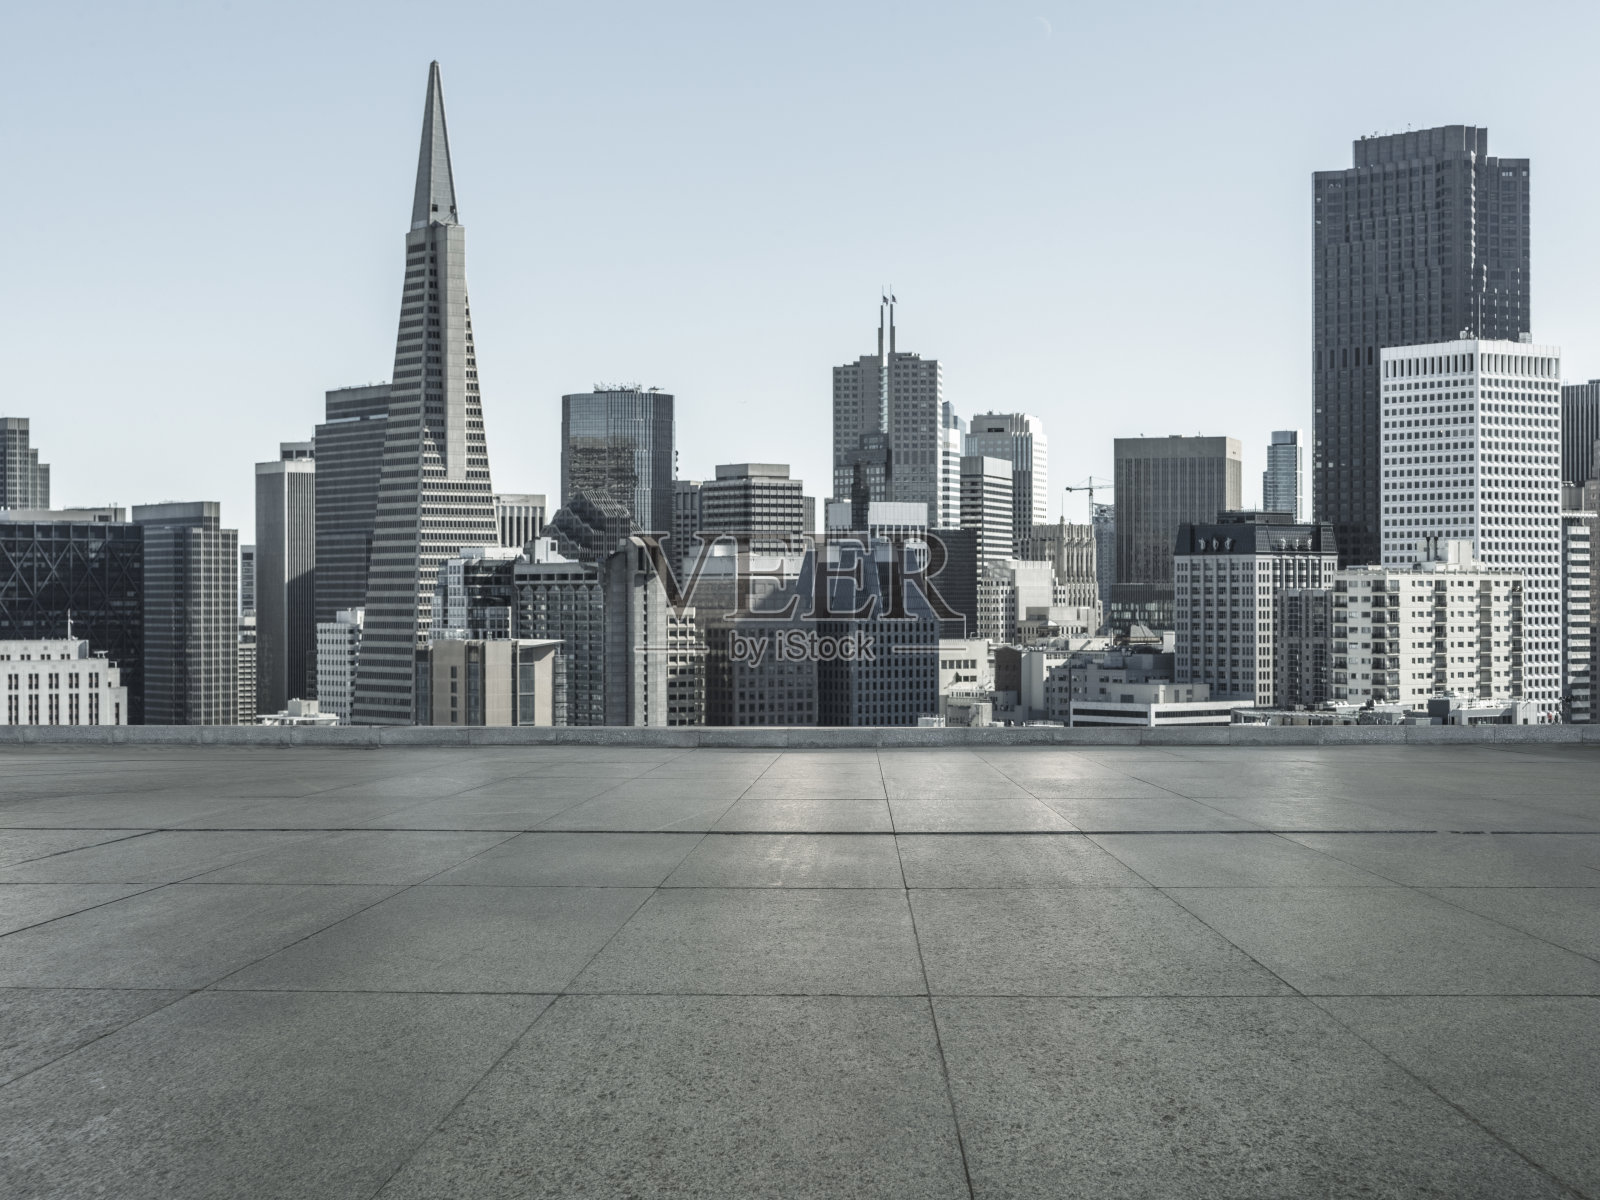 旧金山市中心天际线前的空瓷砖地板和地标泛美金字塔照片摄影图片